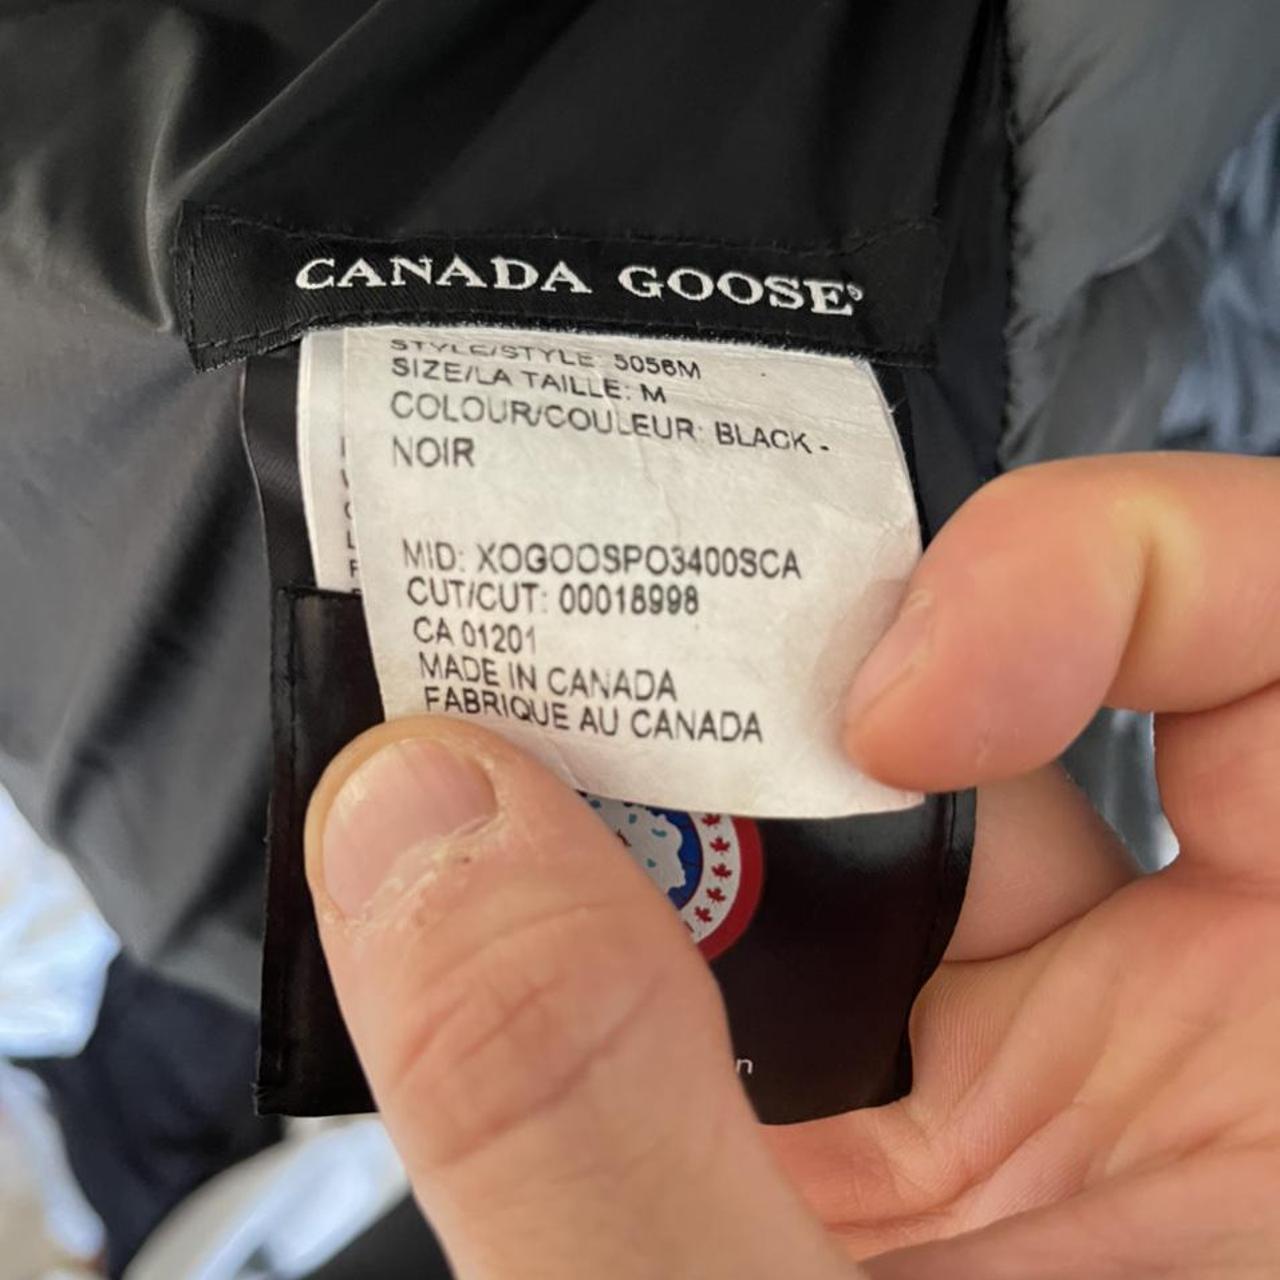 Product Image 3 - Canada Goose Lodge Jacket

Size Medium